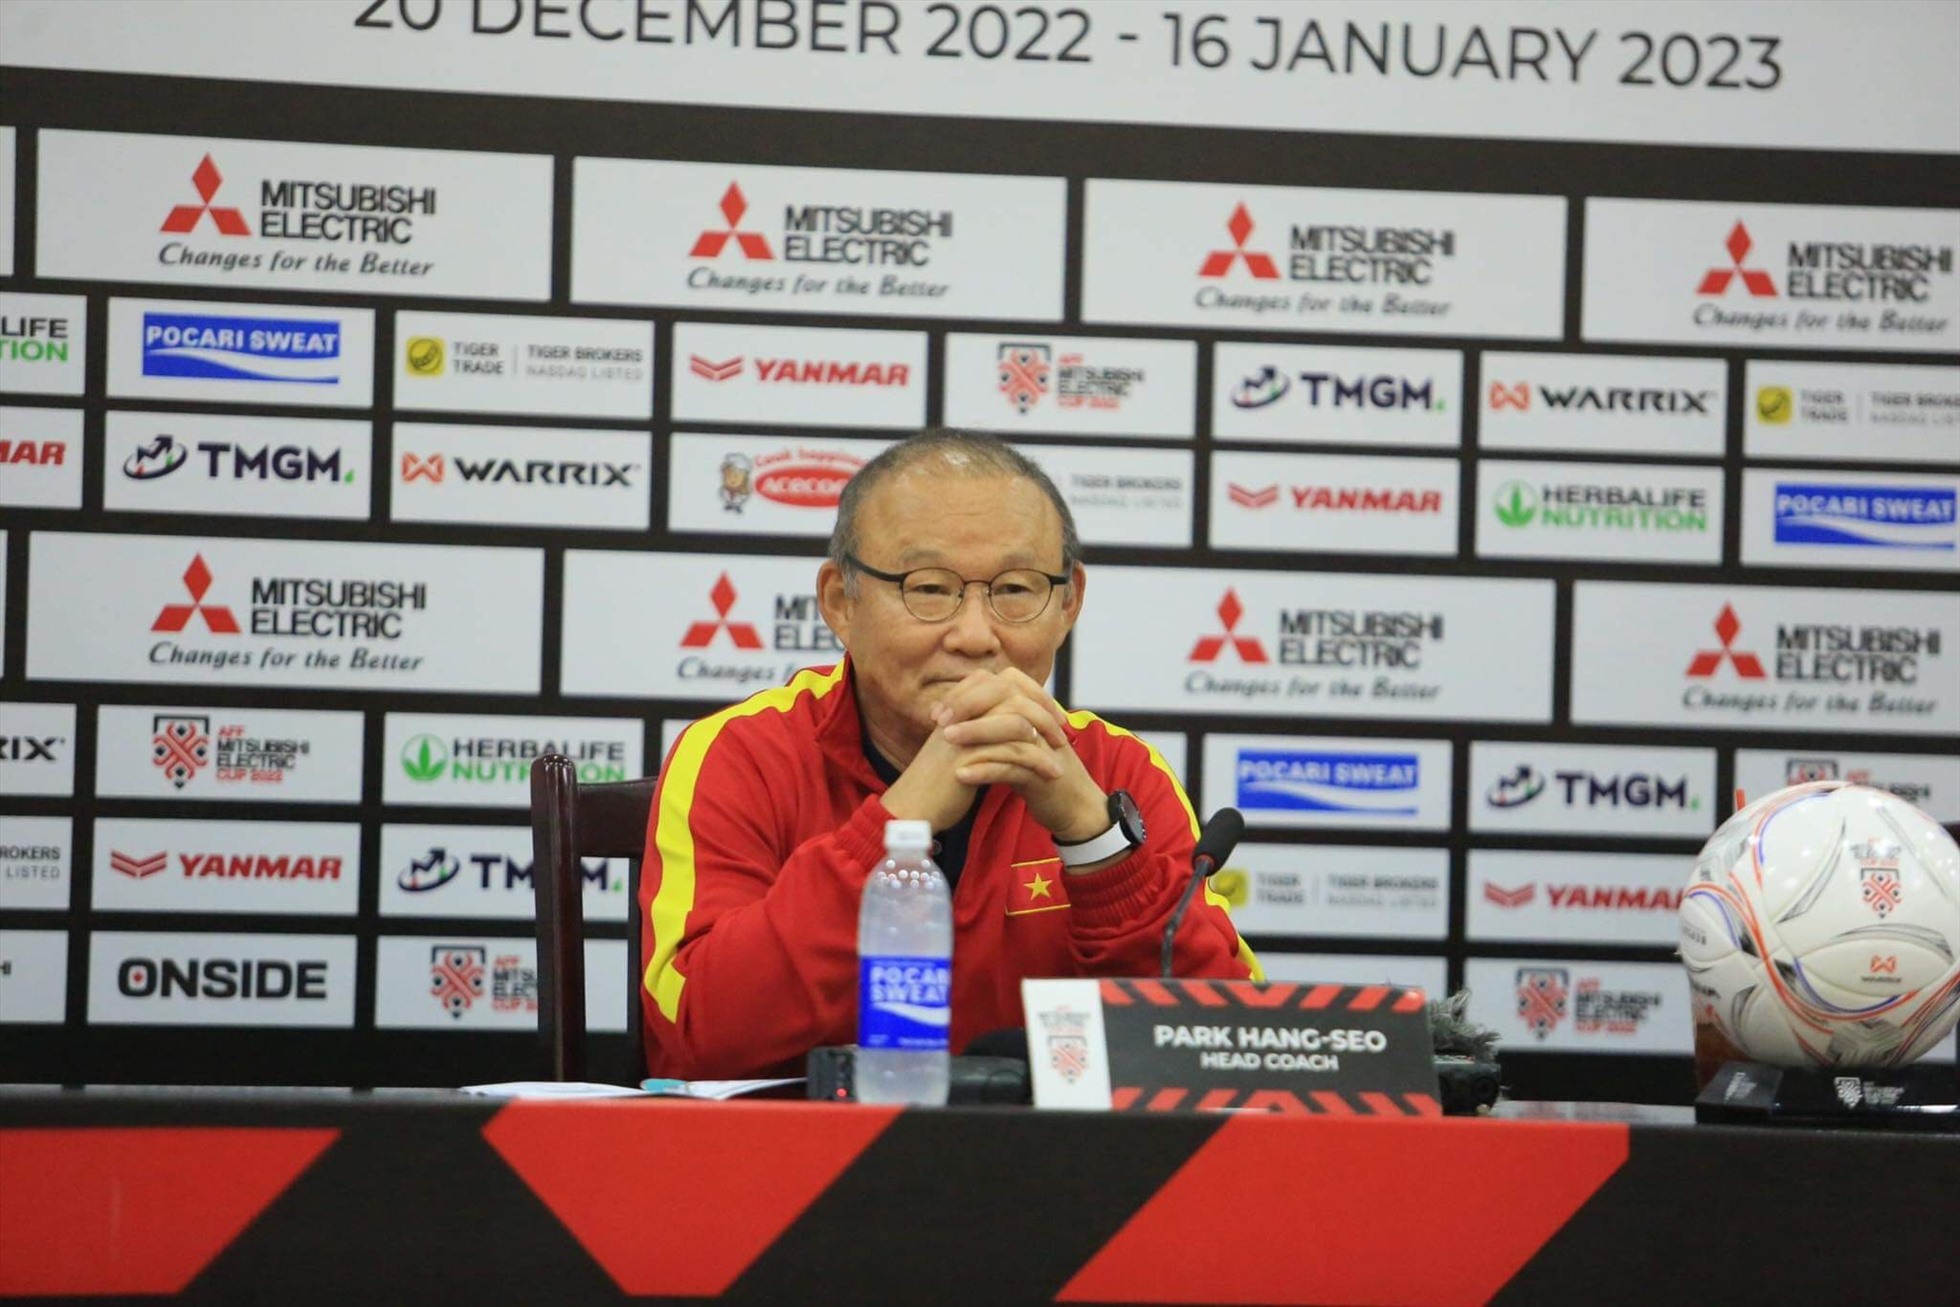 Huấn luyện viên Park Hang-seo quyết tâm giành chiến thắng trong trận bán kết lượt về với Indonesia. Ảnh: Xuân Trang